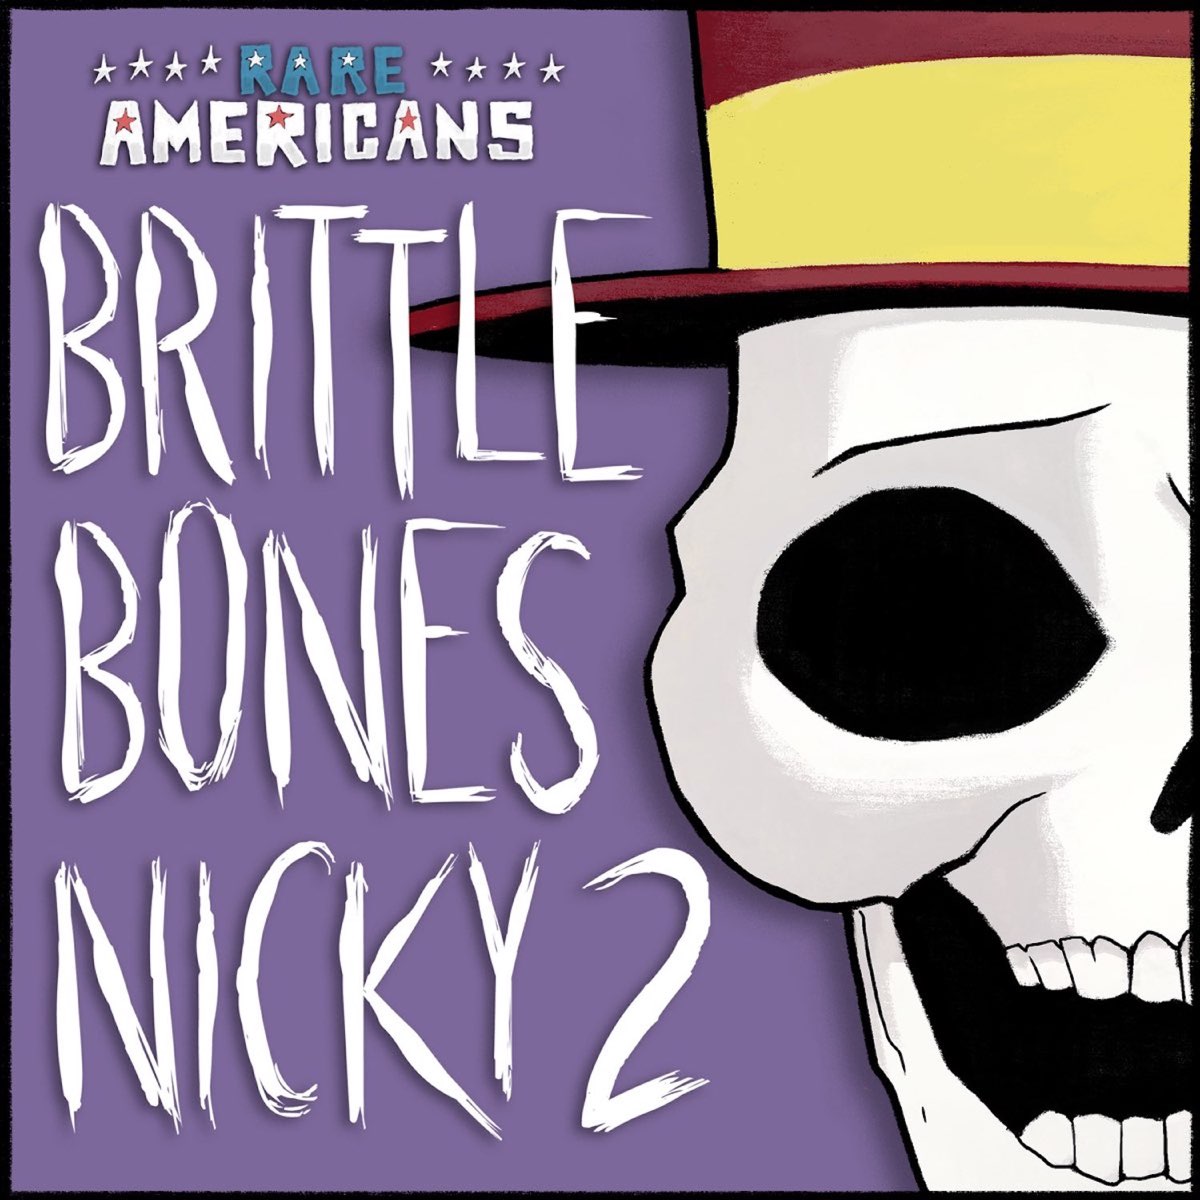 Brittle bones nicky. Brittle Bones Nicky 2. Rare Americans brittle Bones Nicky. Rare Americans группа.